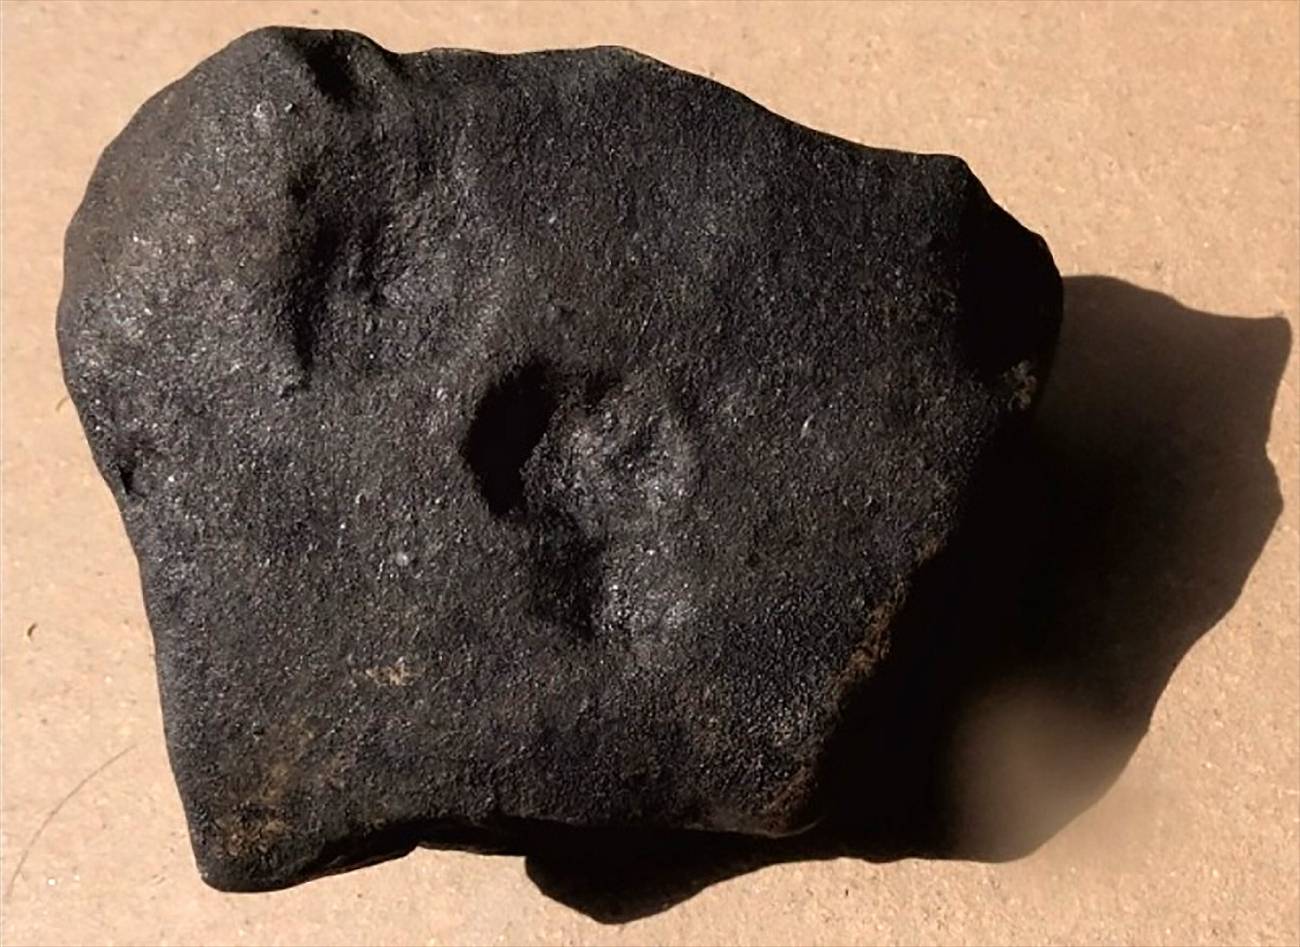 Recuperan y analizan por primera vez un meteorito caido en Galicia